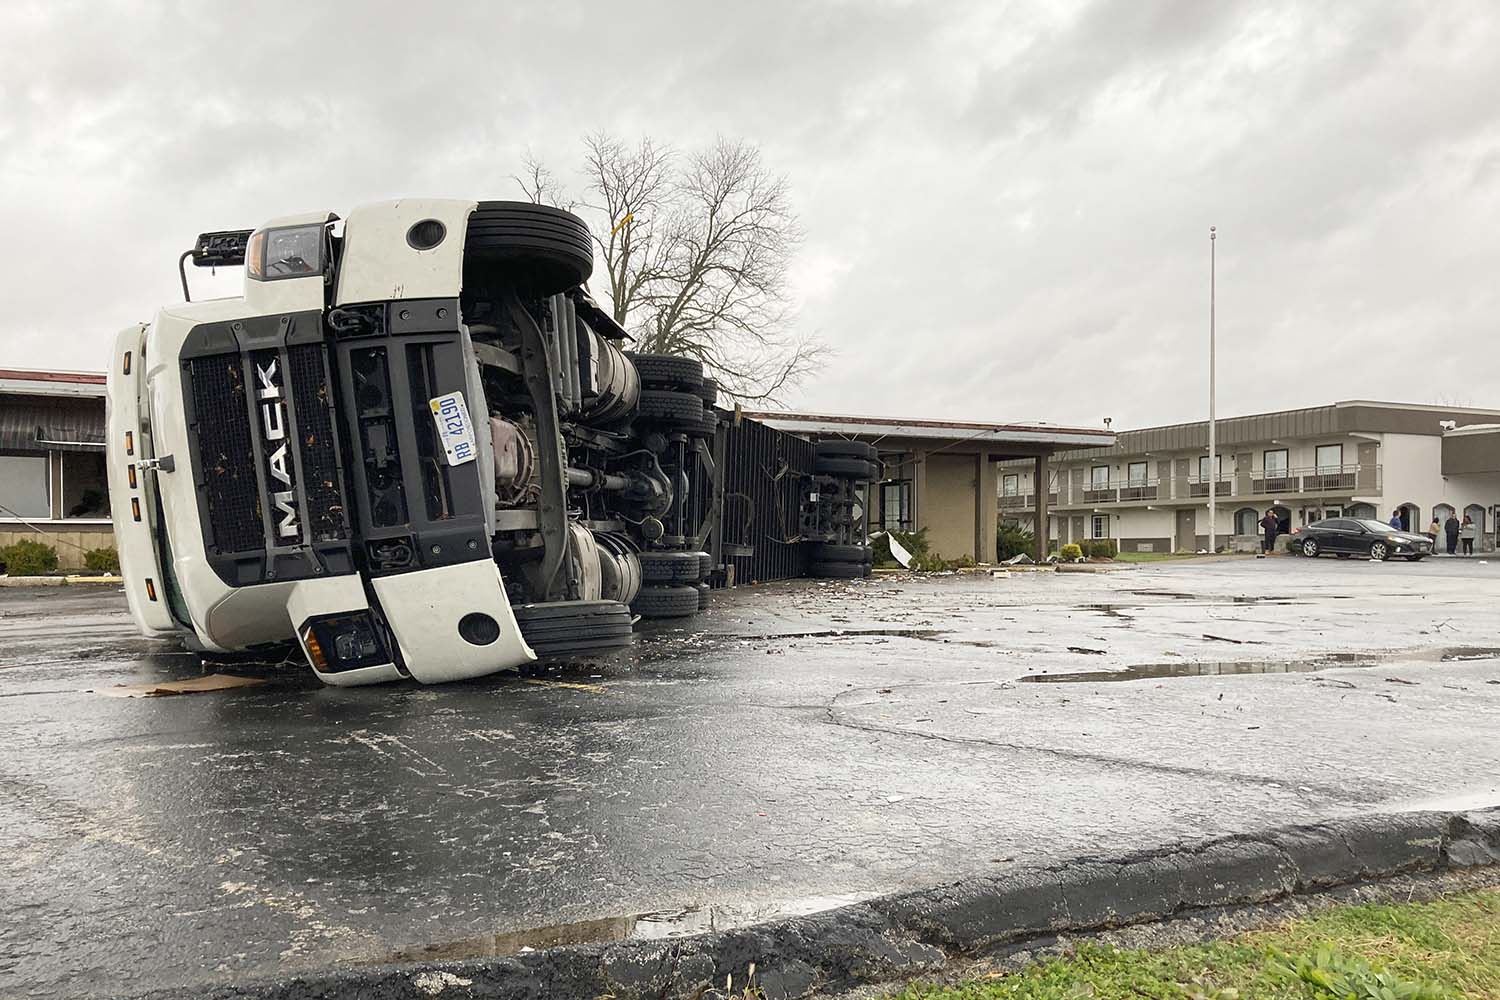 משאית סמיטריילר גדולה התהפכה בסופה בארקנסו  (AP Photo/Dylan T. Lovan)